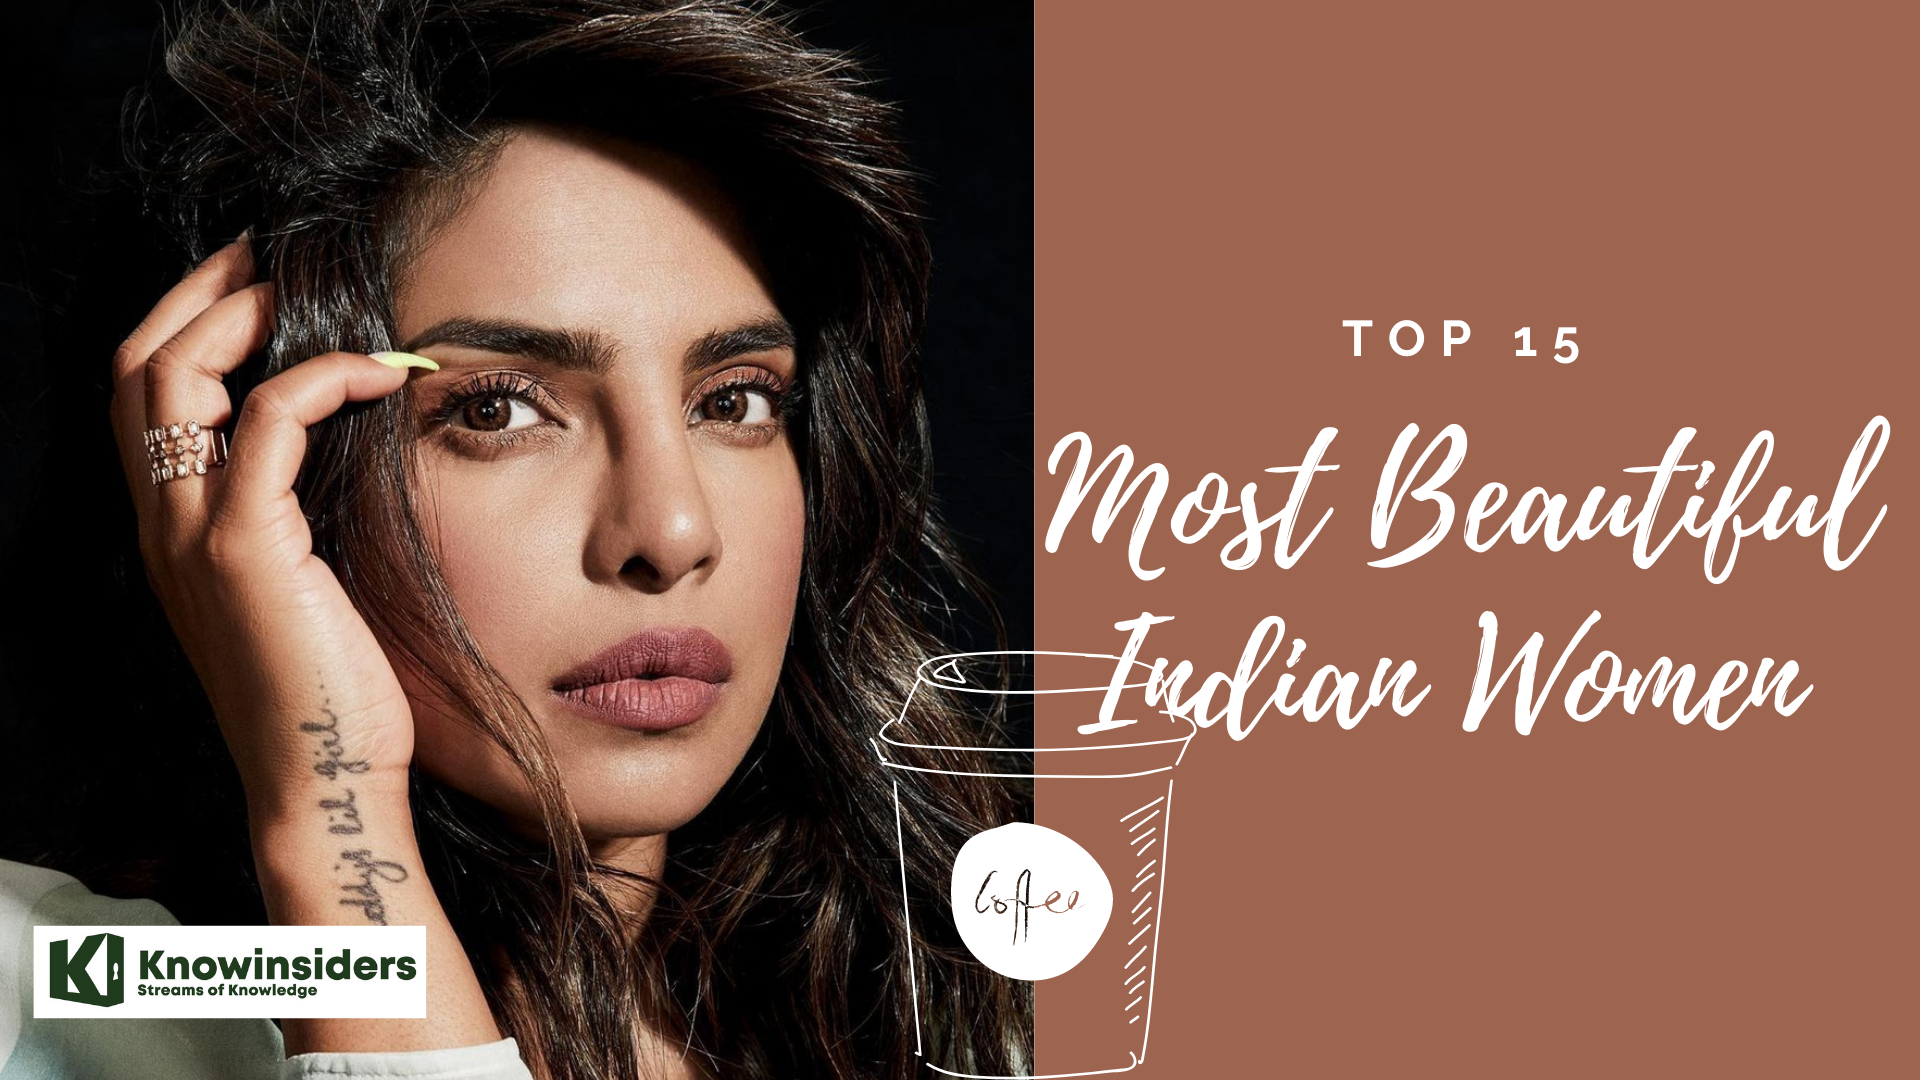 Top 15 most beautiful Indian women